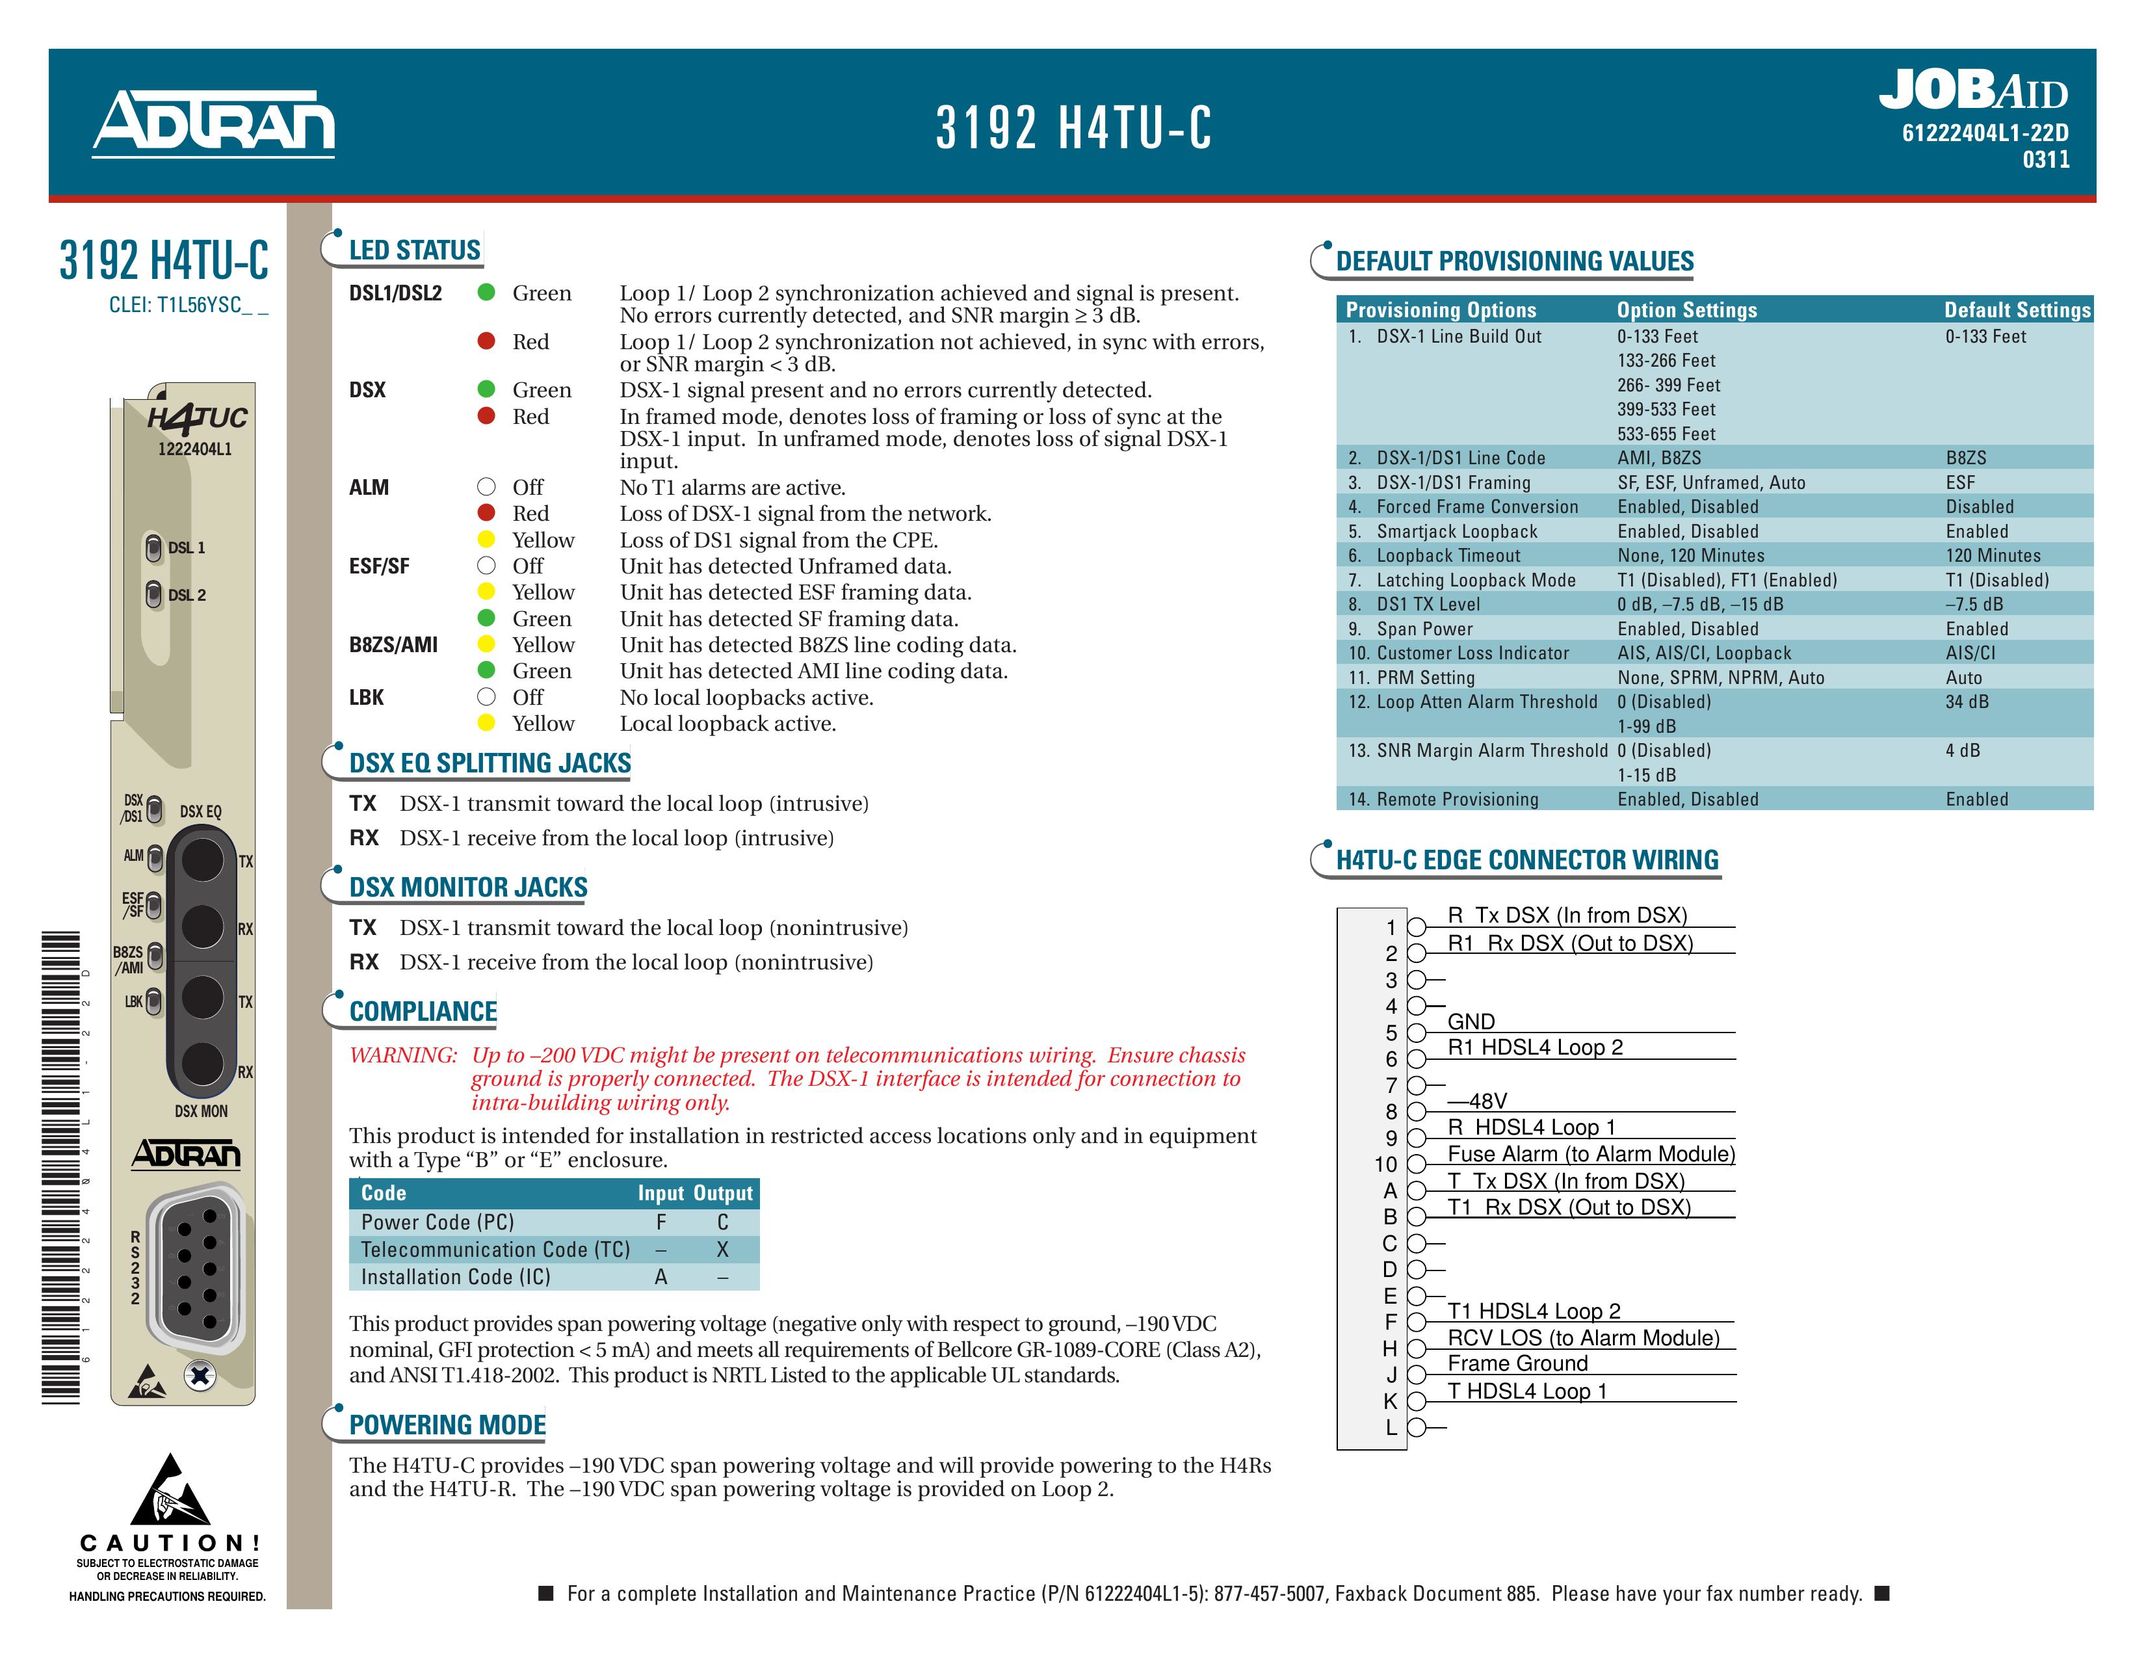 ADTRAN 3192 H4TU-C Network Card User Manual